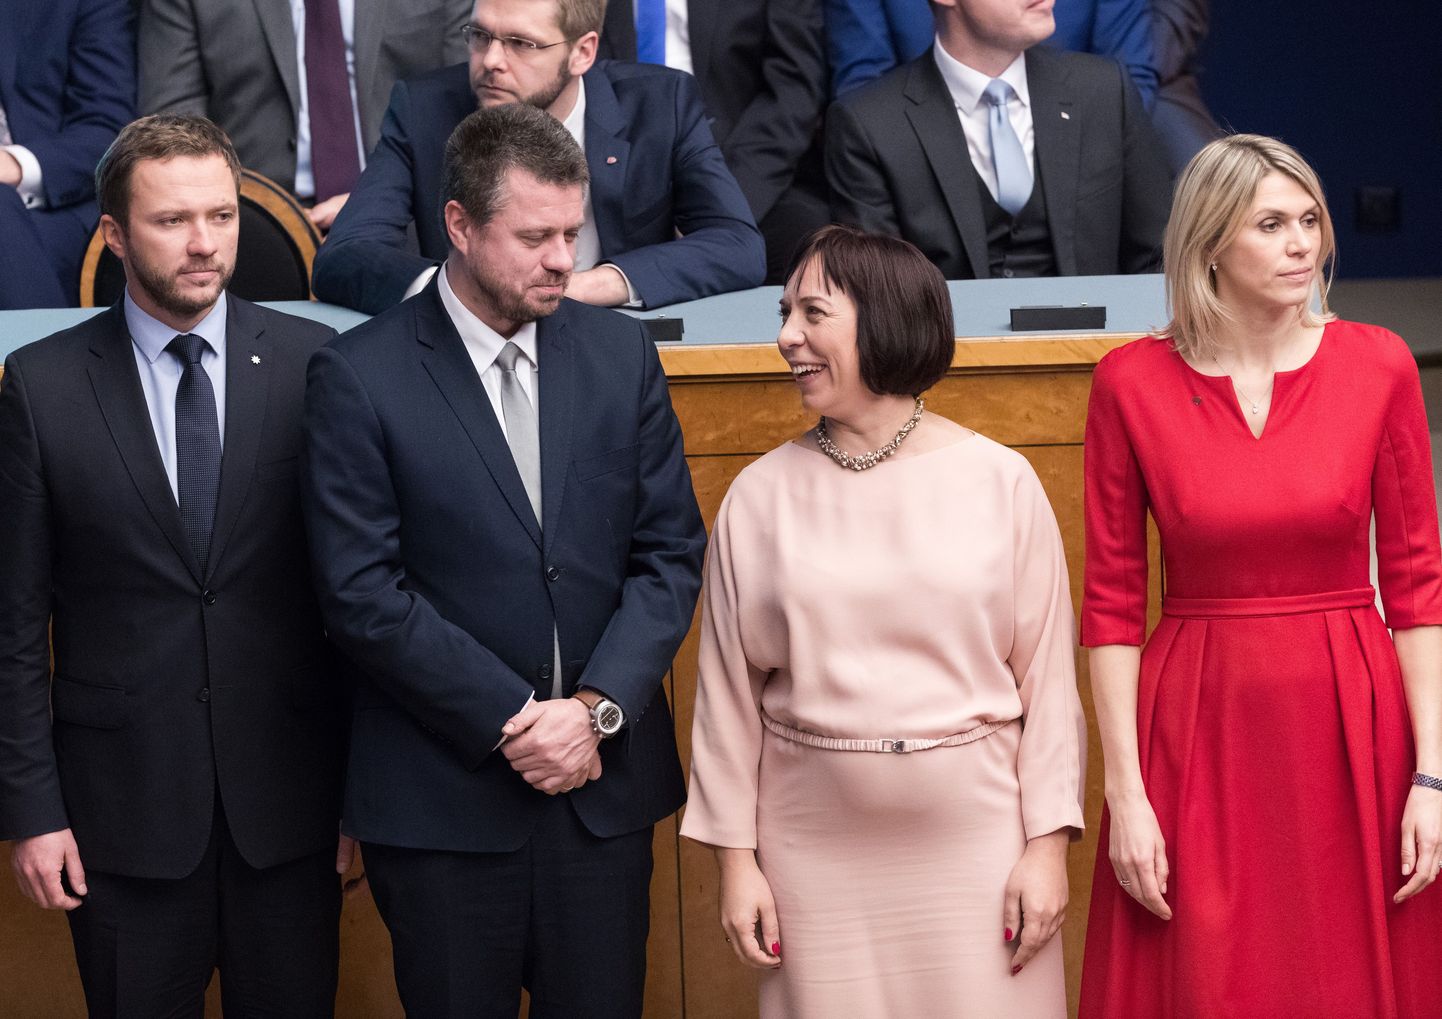 Uue valitsuse ministrid Urmas Reinsalu (vasakult teine) ja Urve Palo (paremalt esimene) ei leia riiklike üürielamute suhtes üksmeelt.